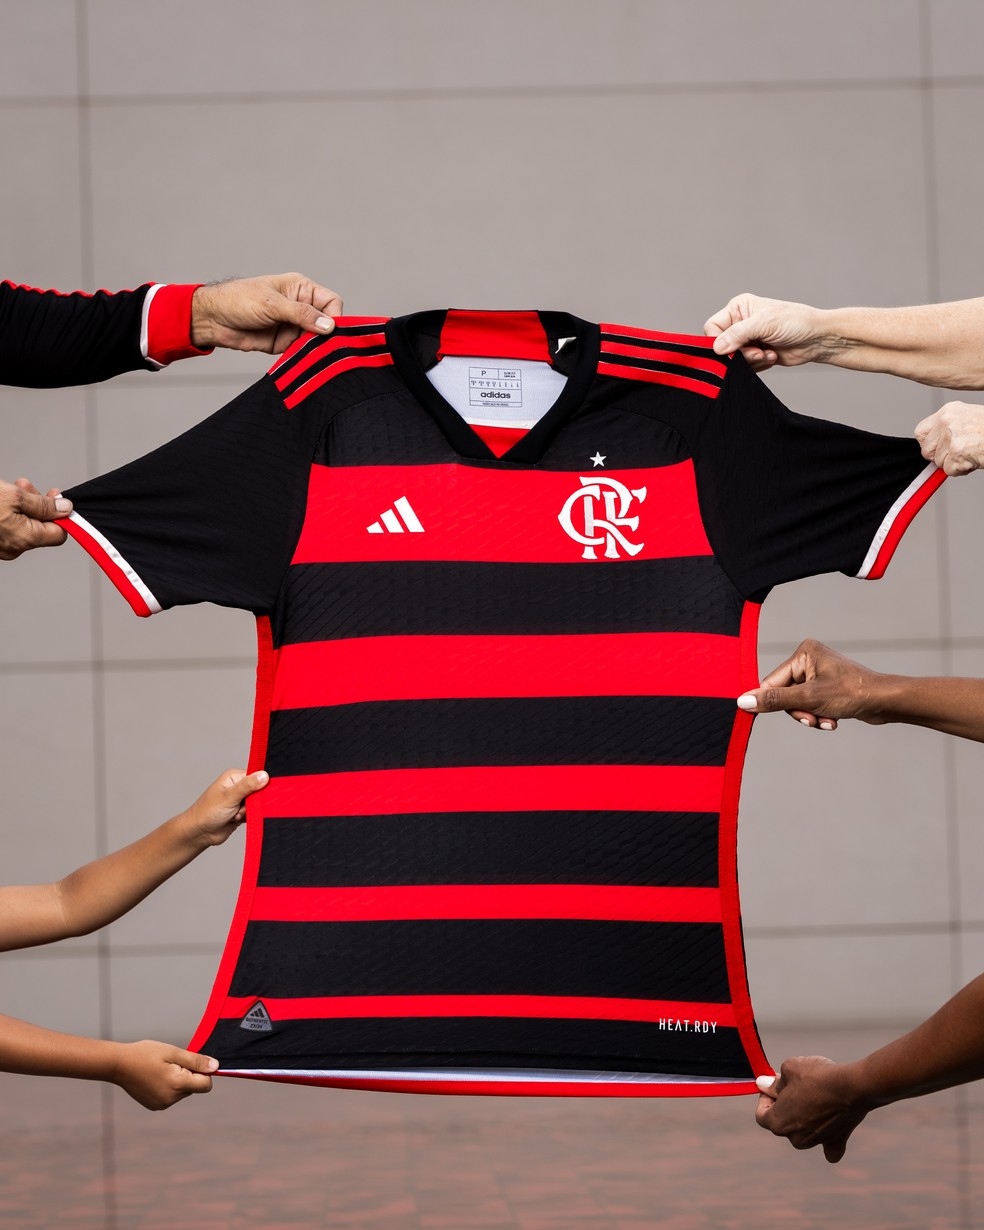 Olha a nova camisa do Flamengo segurada por torcedores de todas as cores